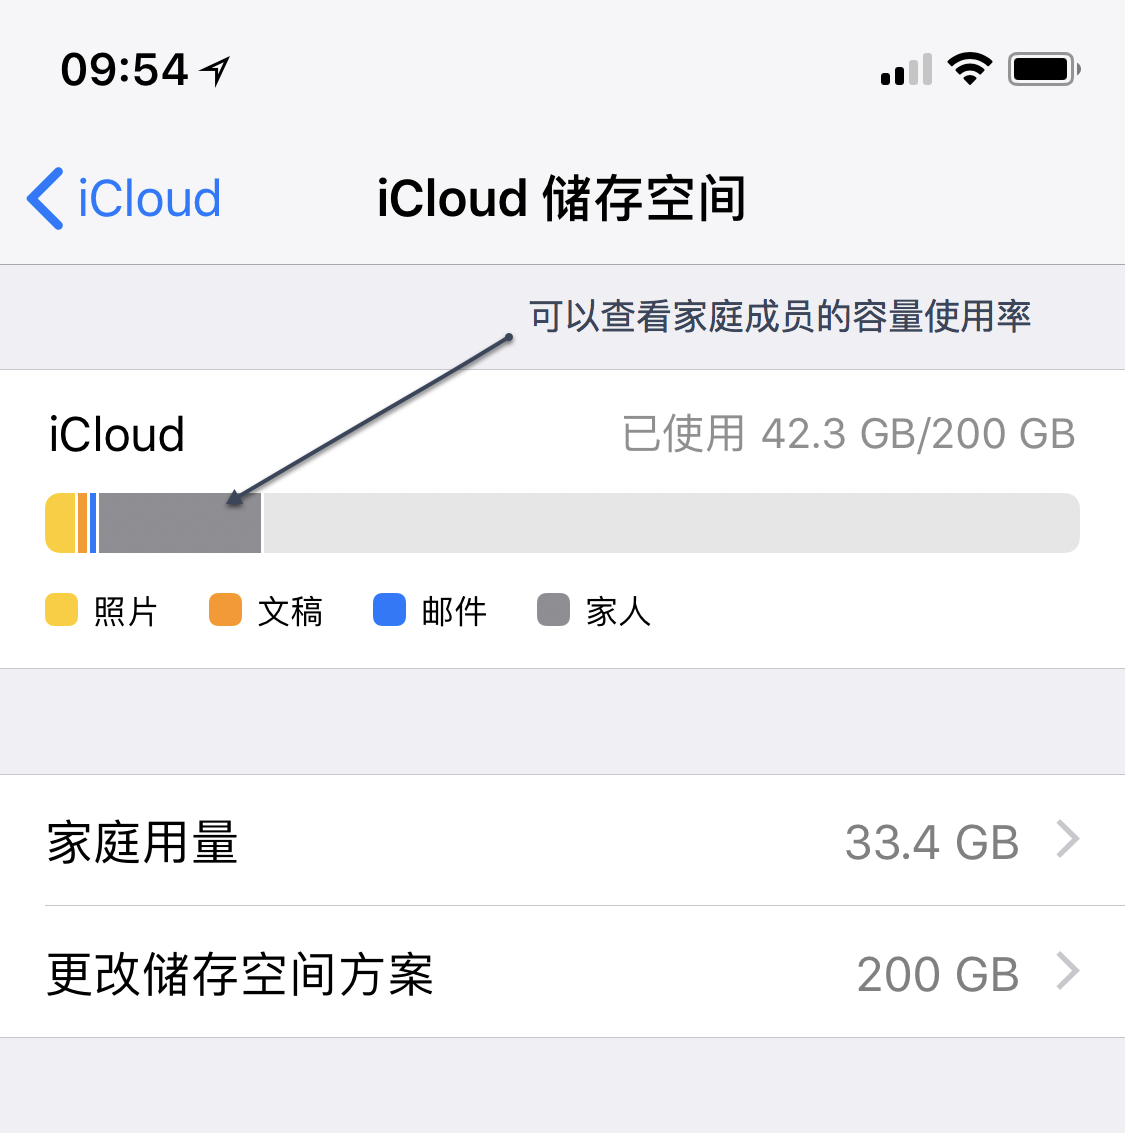 设置“家人共享” - 官方 Apple 支持 (中国)